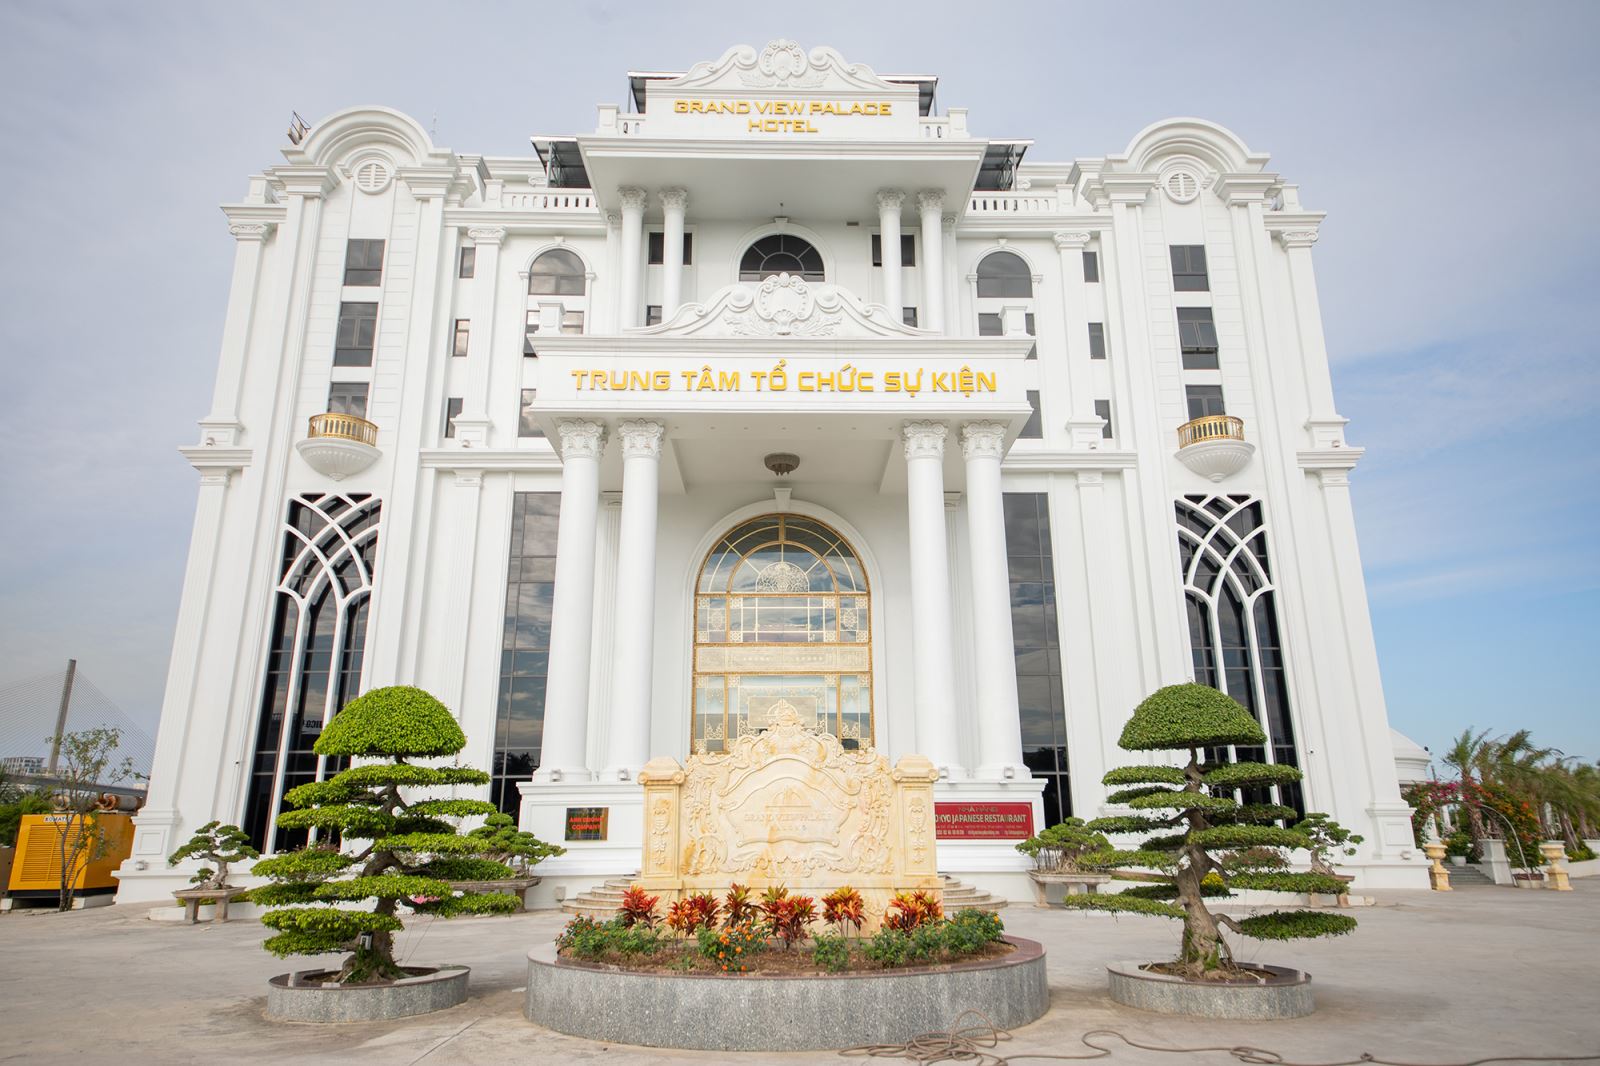  GRAND VIEW PALACE HALONG - Điểm đến lý tưởng khi du lịch Hạ Long